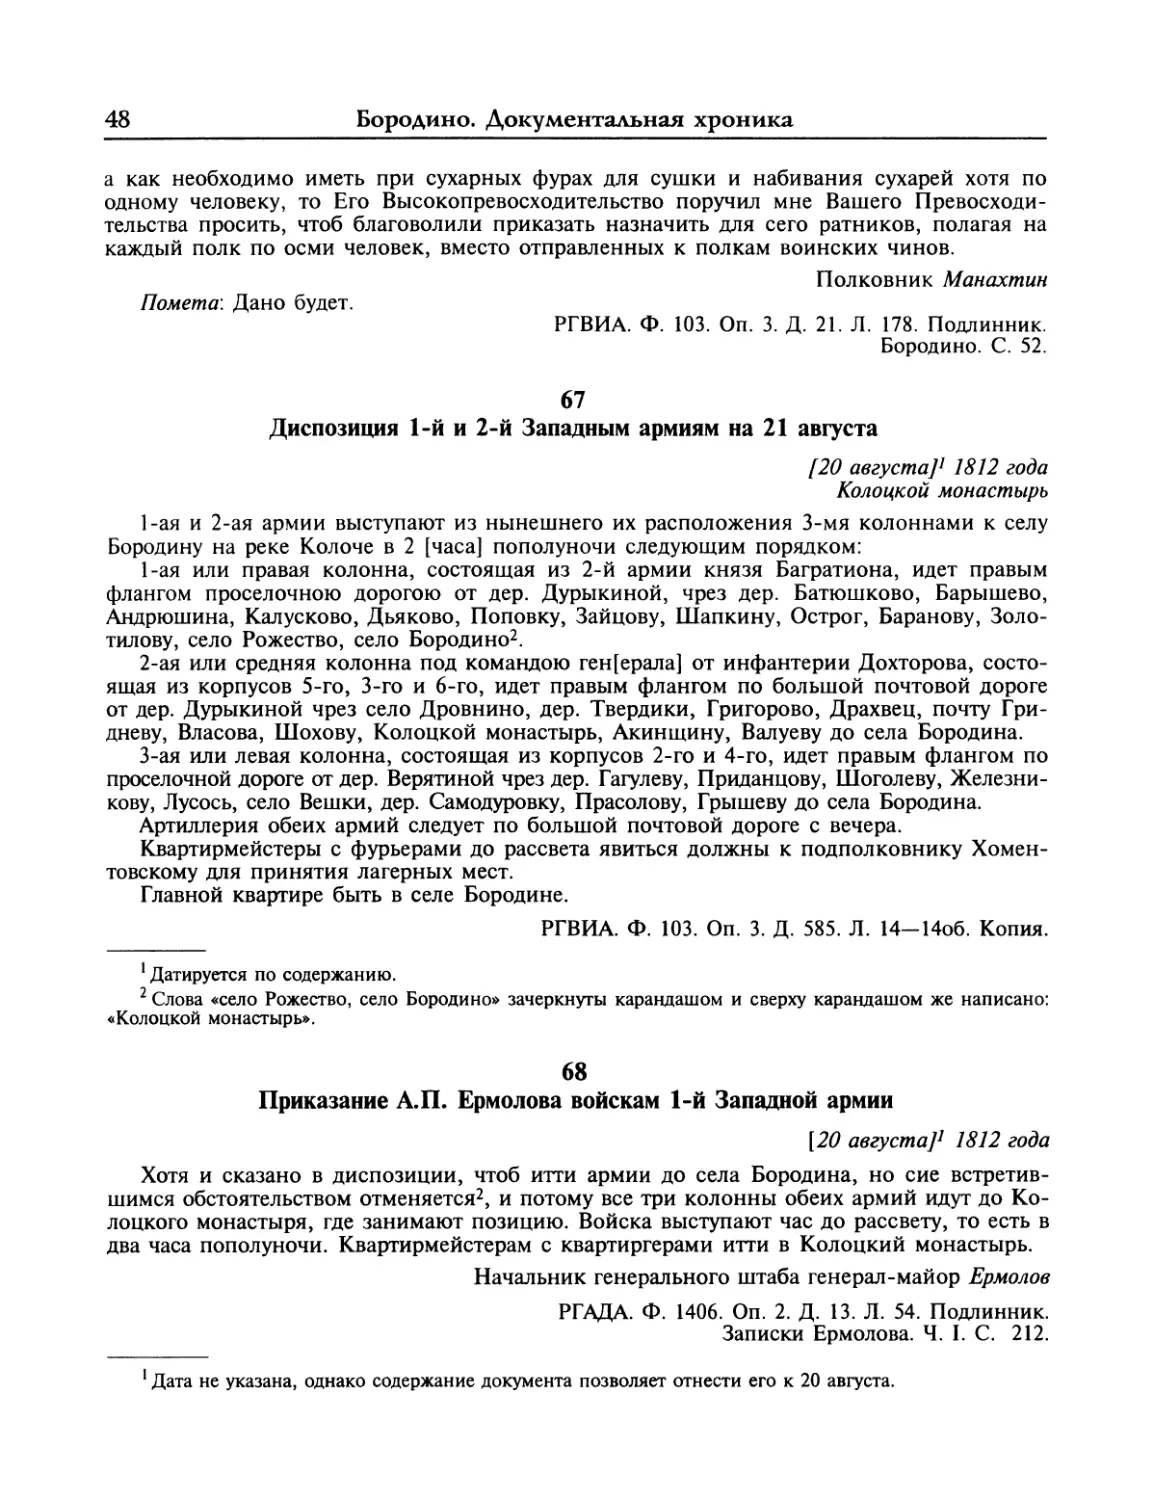 Диспозиция 1-й и 2-й Западным армиям на 21 августа
Приказание А.П.Ермолова войскам 1-й Западной армии